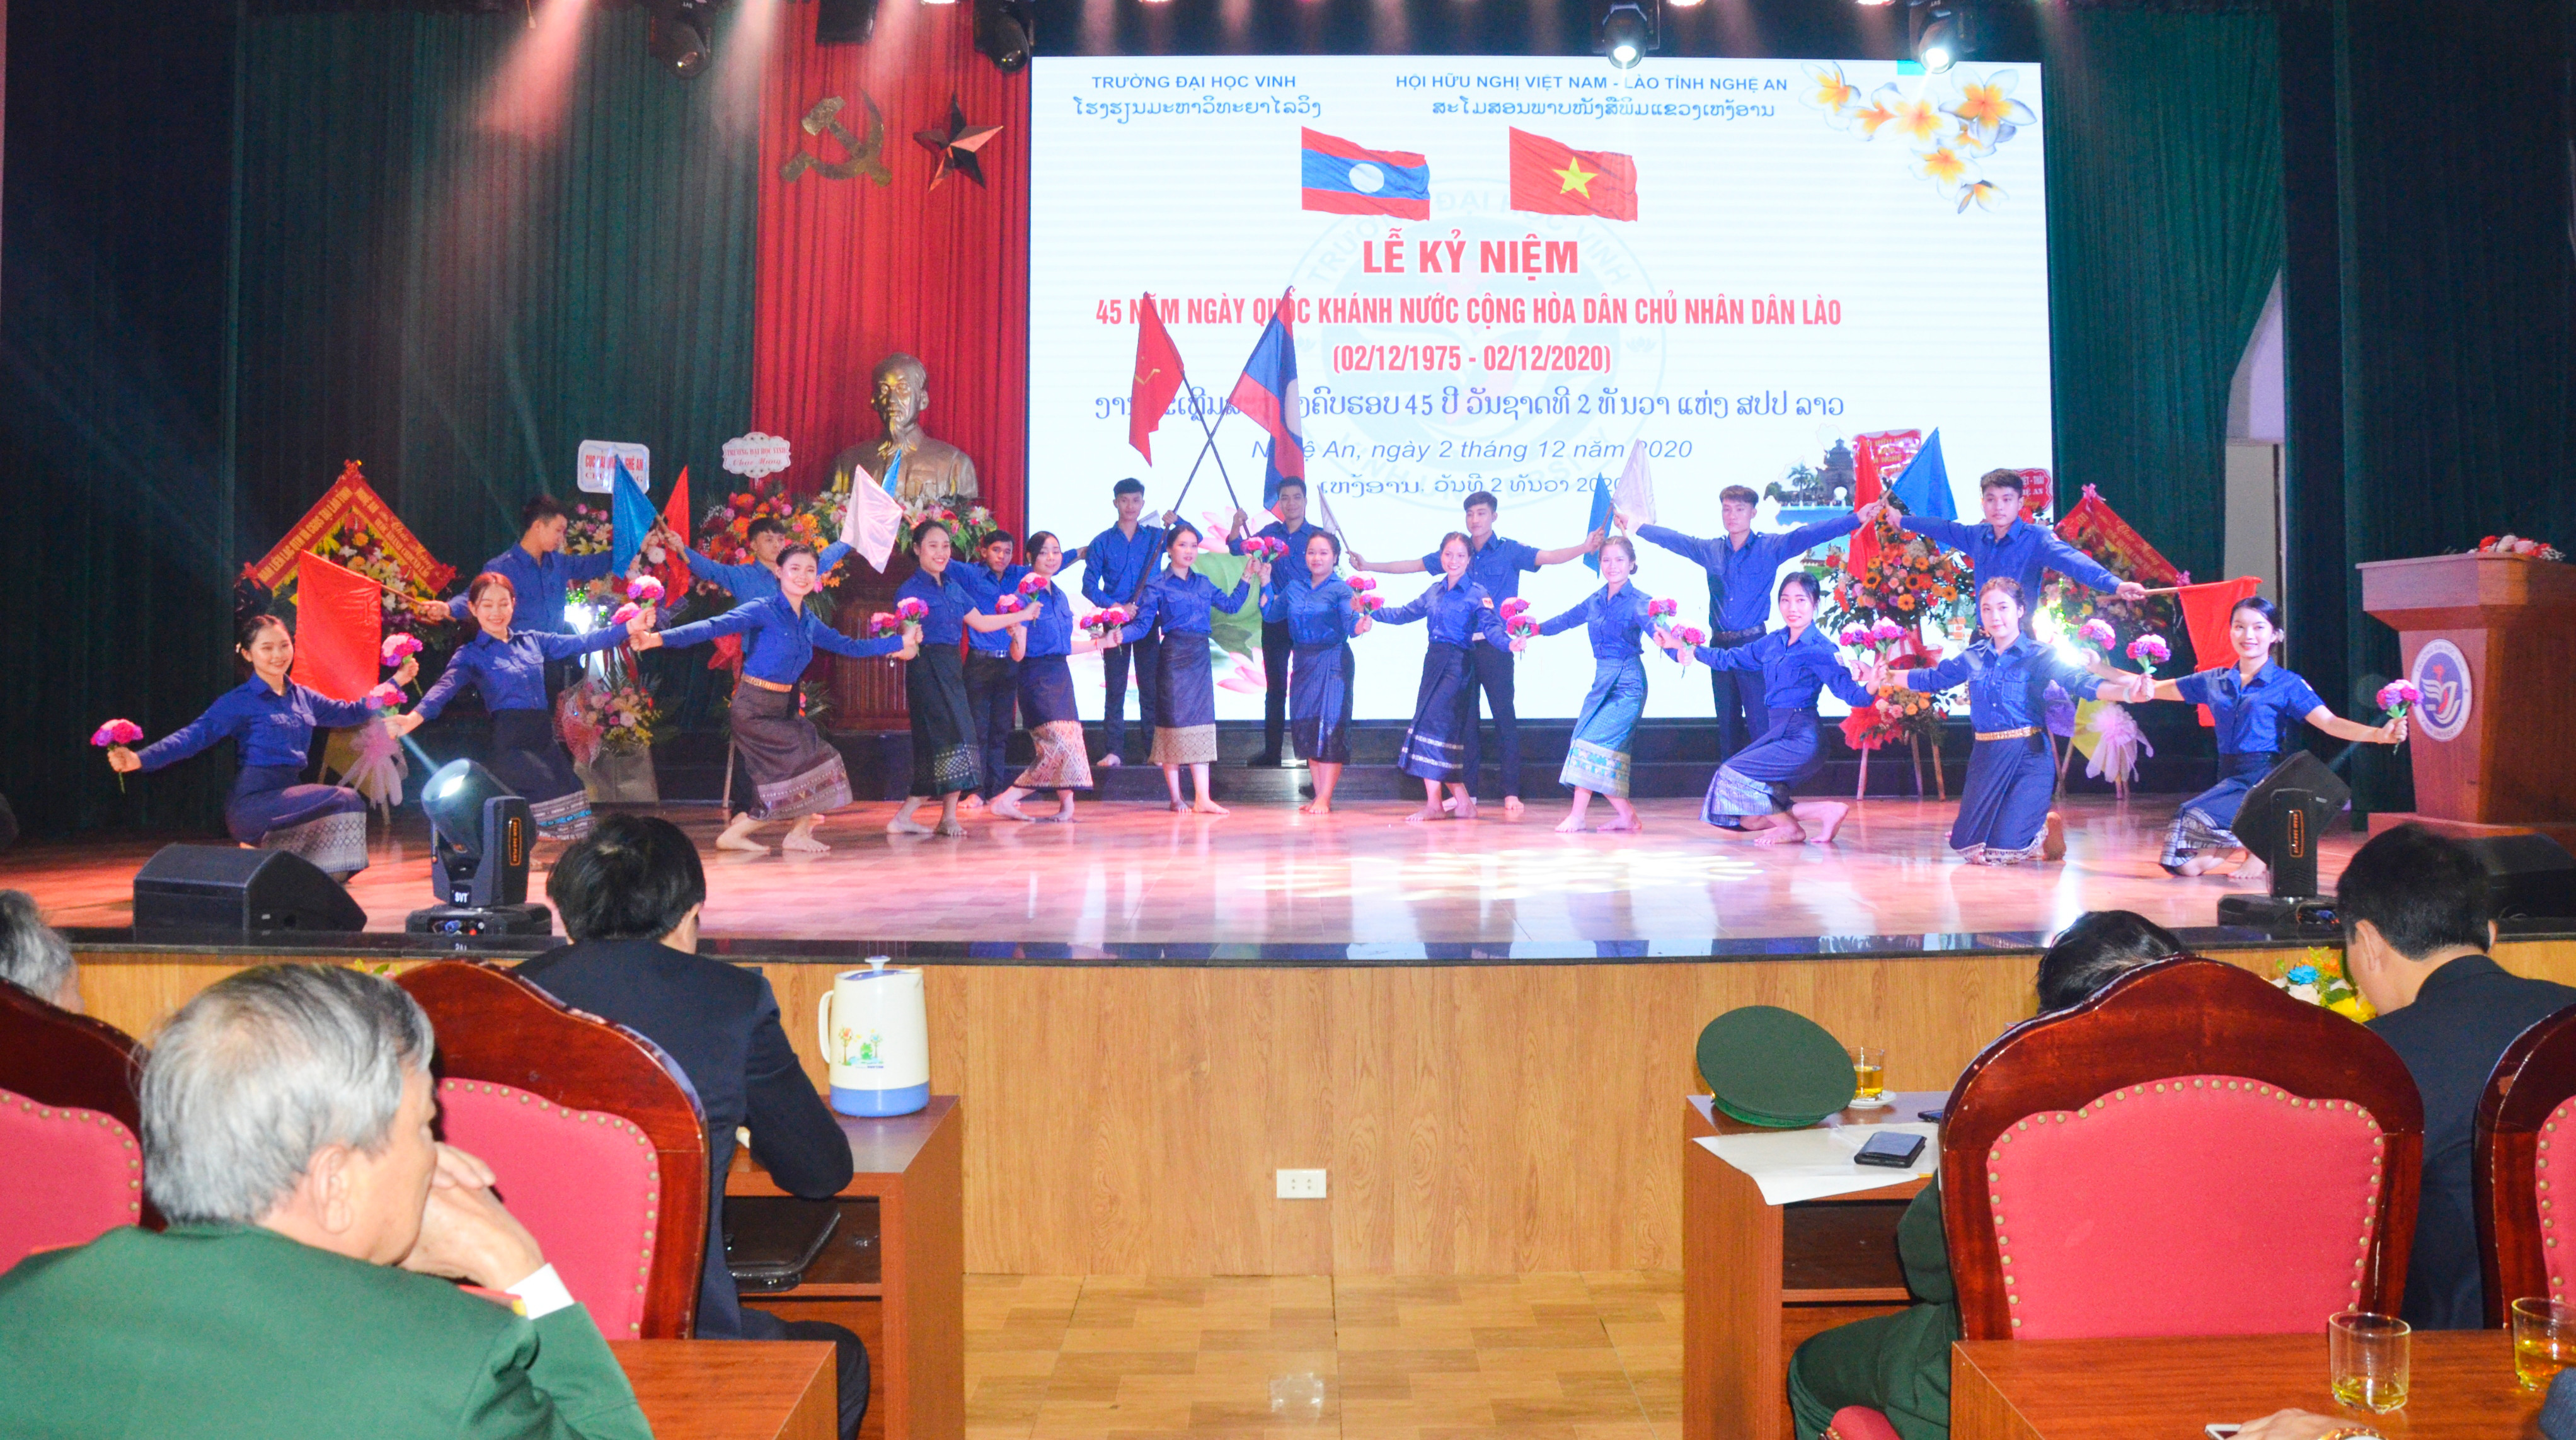 Chương trình văn nghệ của lưu học sinh Lào chào mừng 54 Quốc khánh